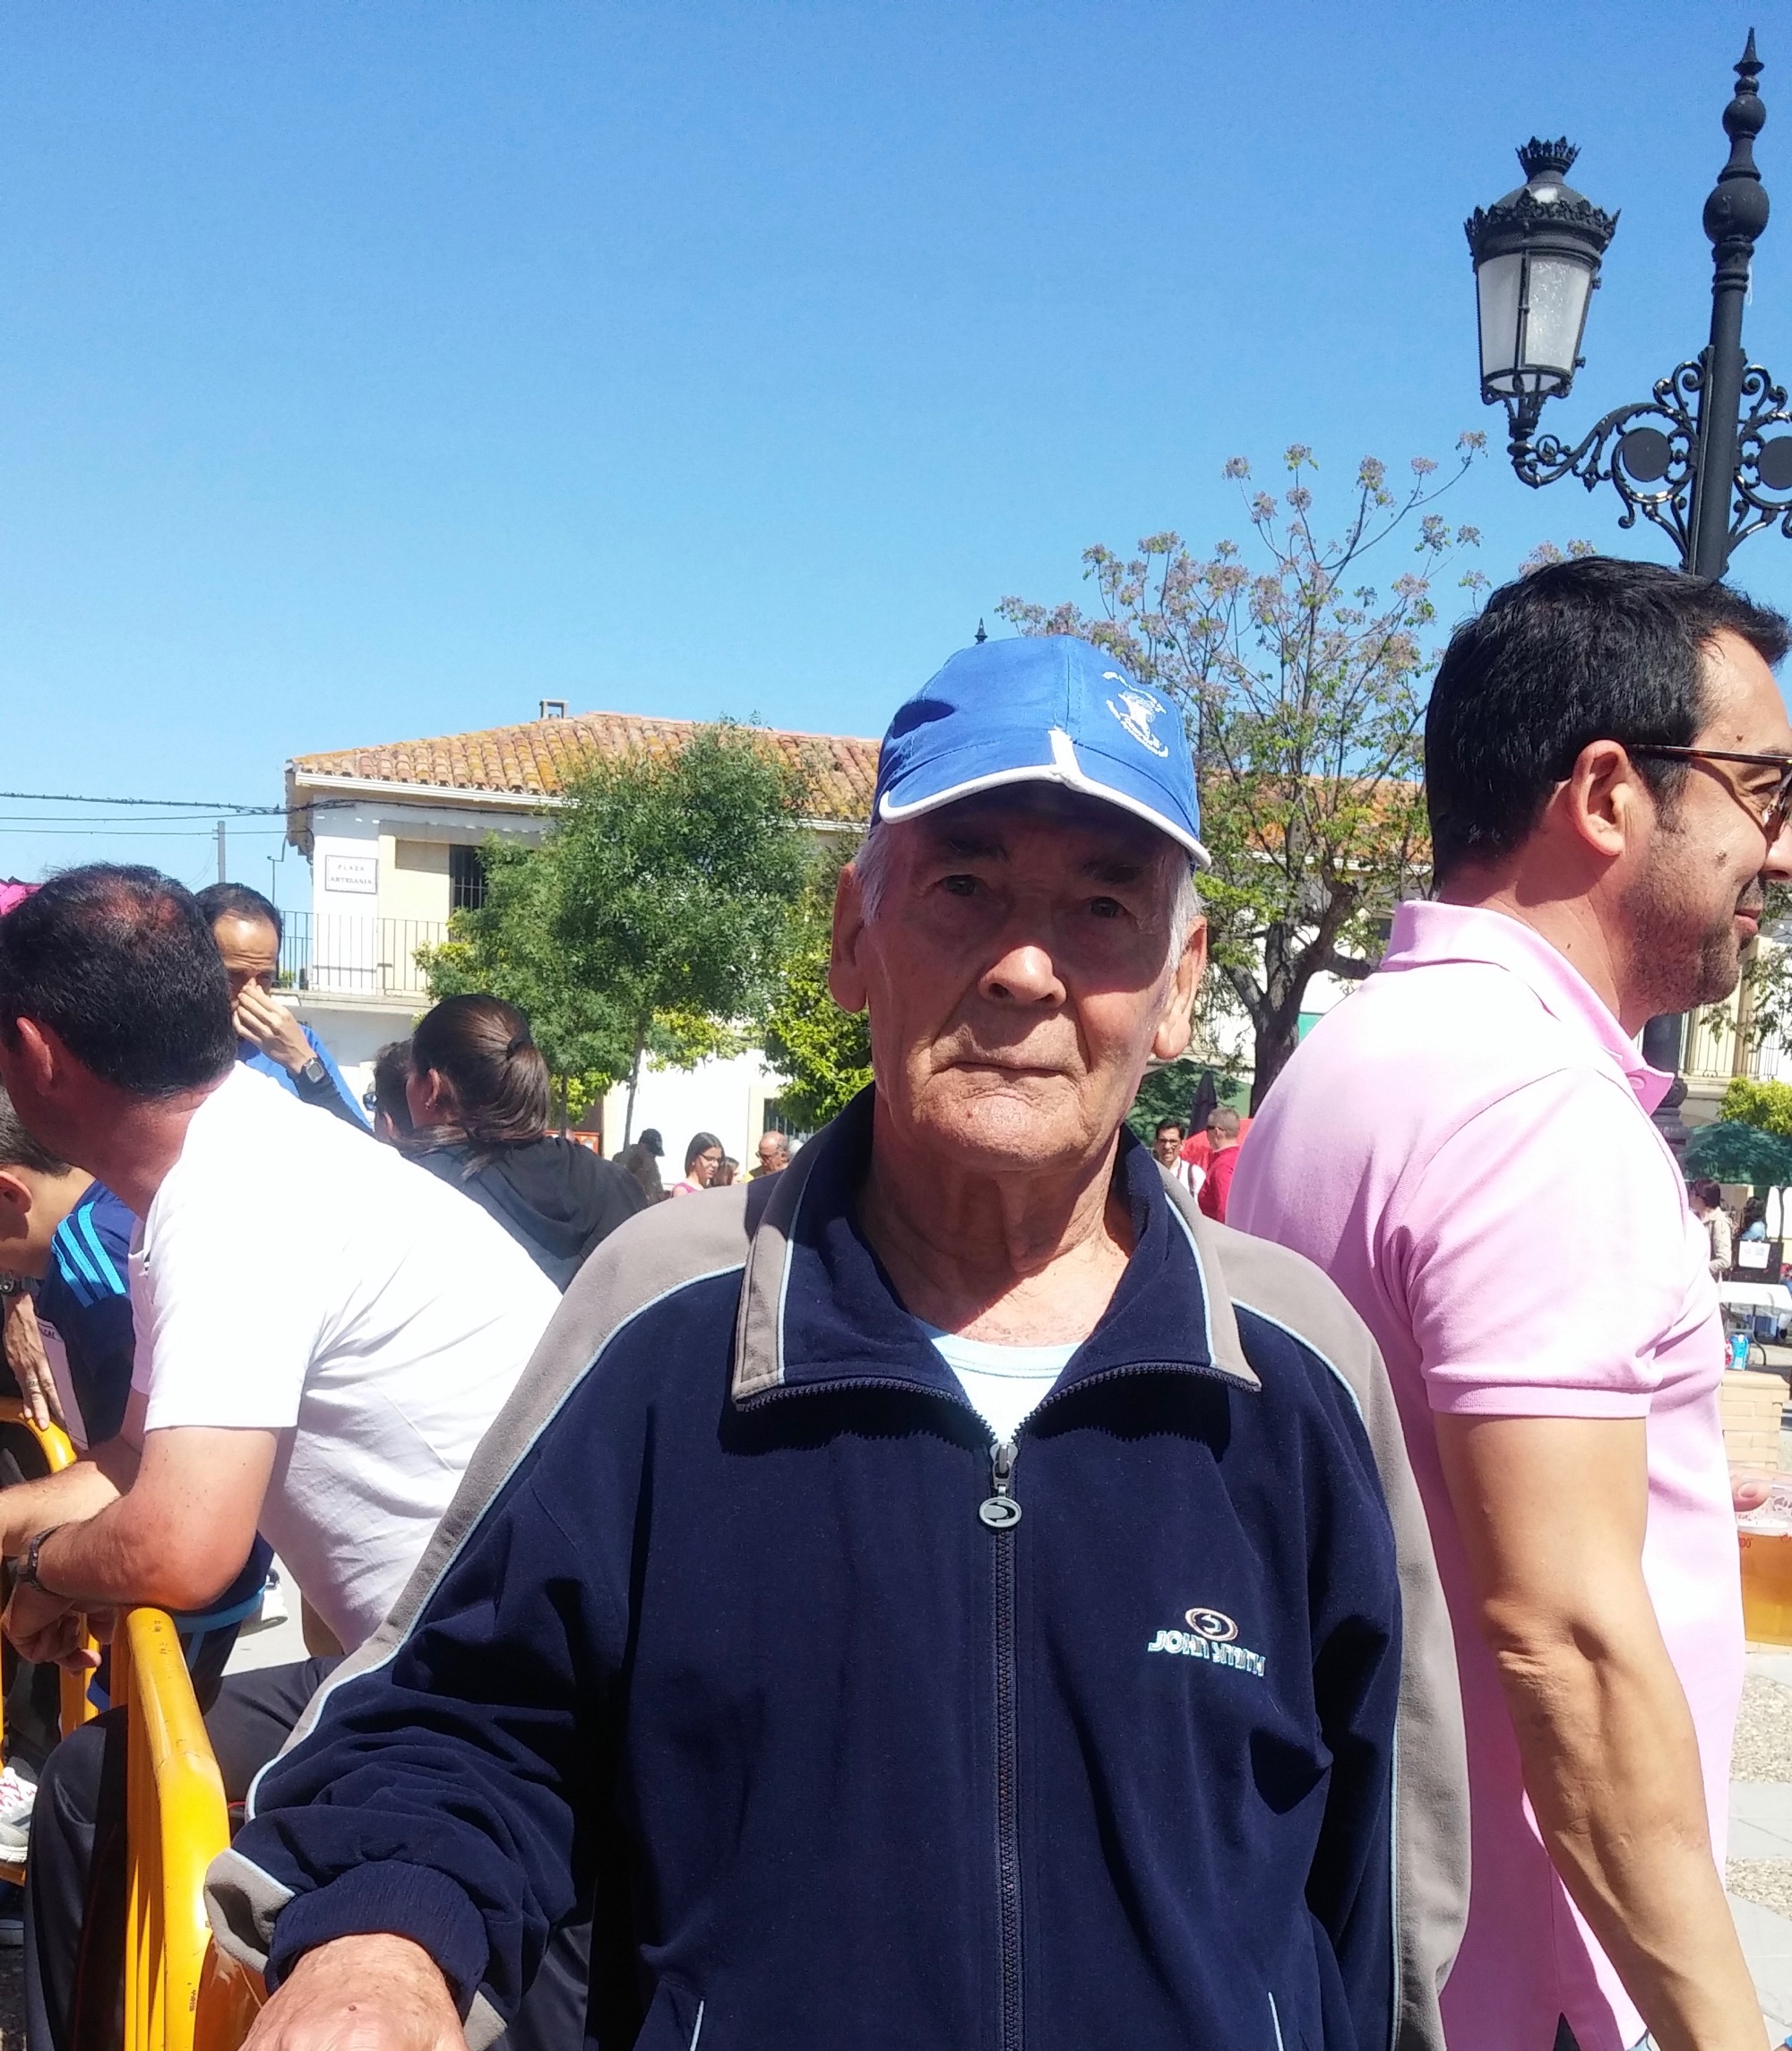 El corredor de más edad, Pedro Rizo, con 81. Dice que no se ha perdido la carrera ningún año.